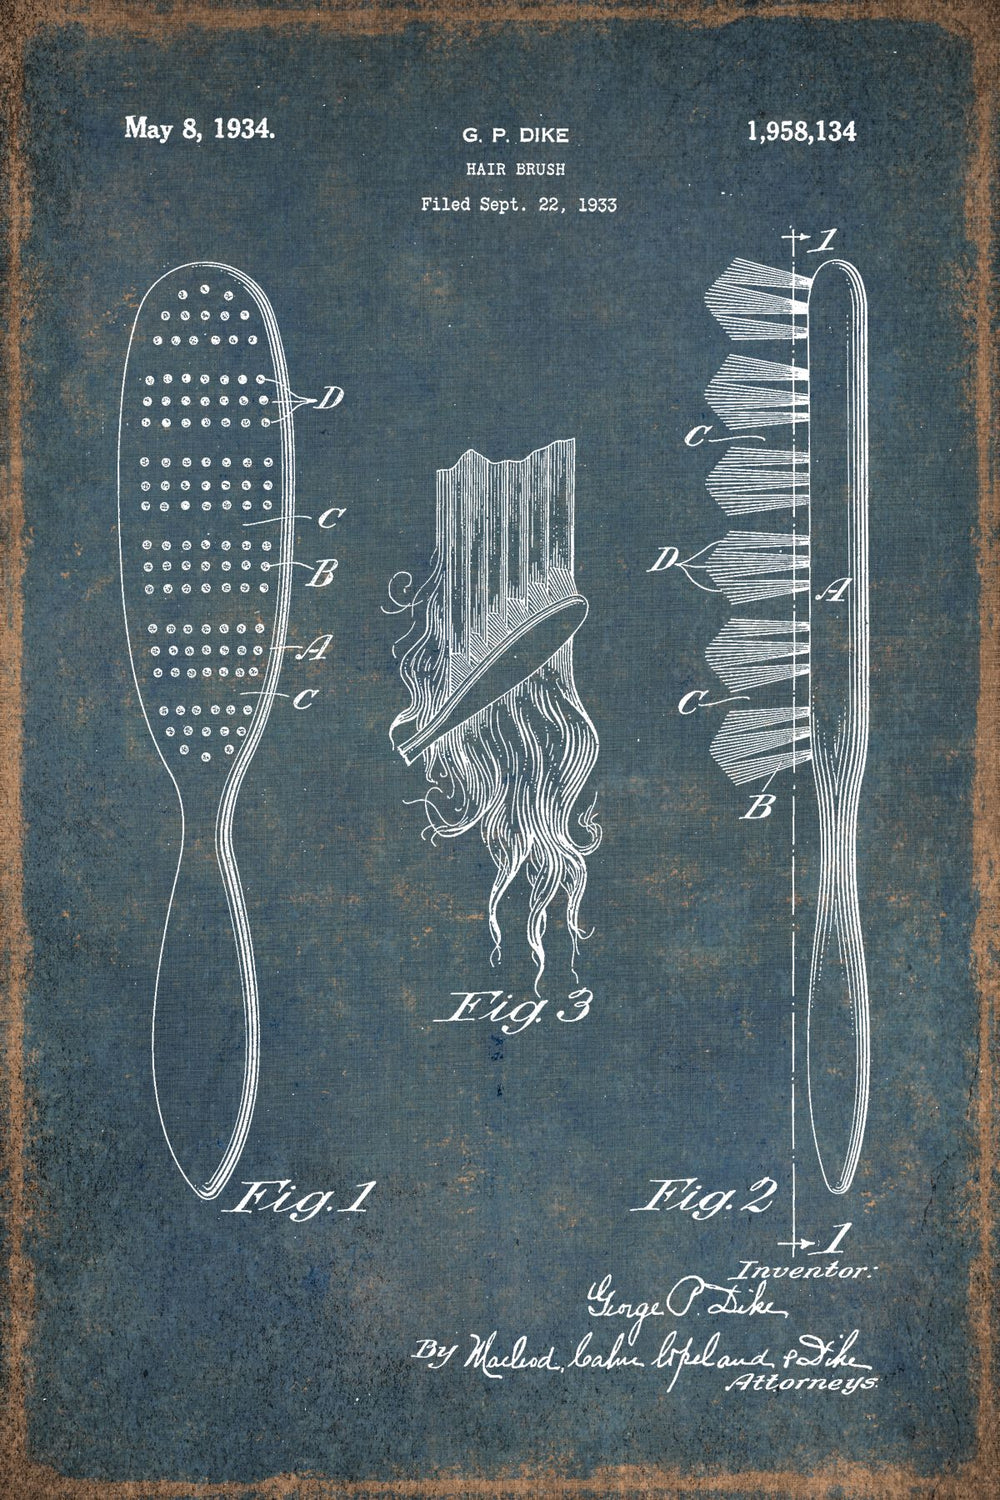 Hair Brush 1934 Patent